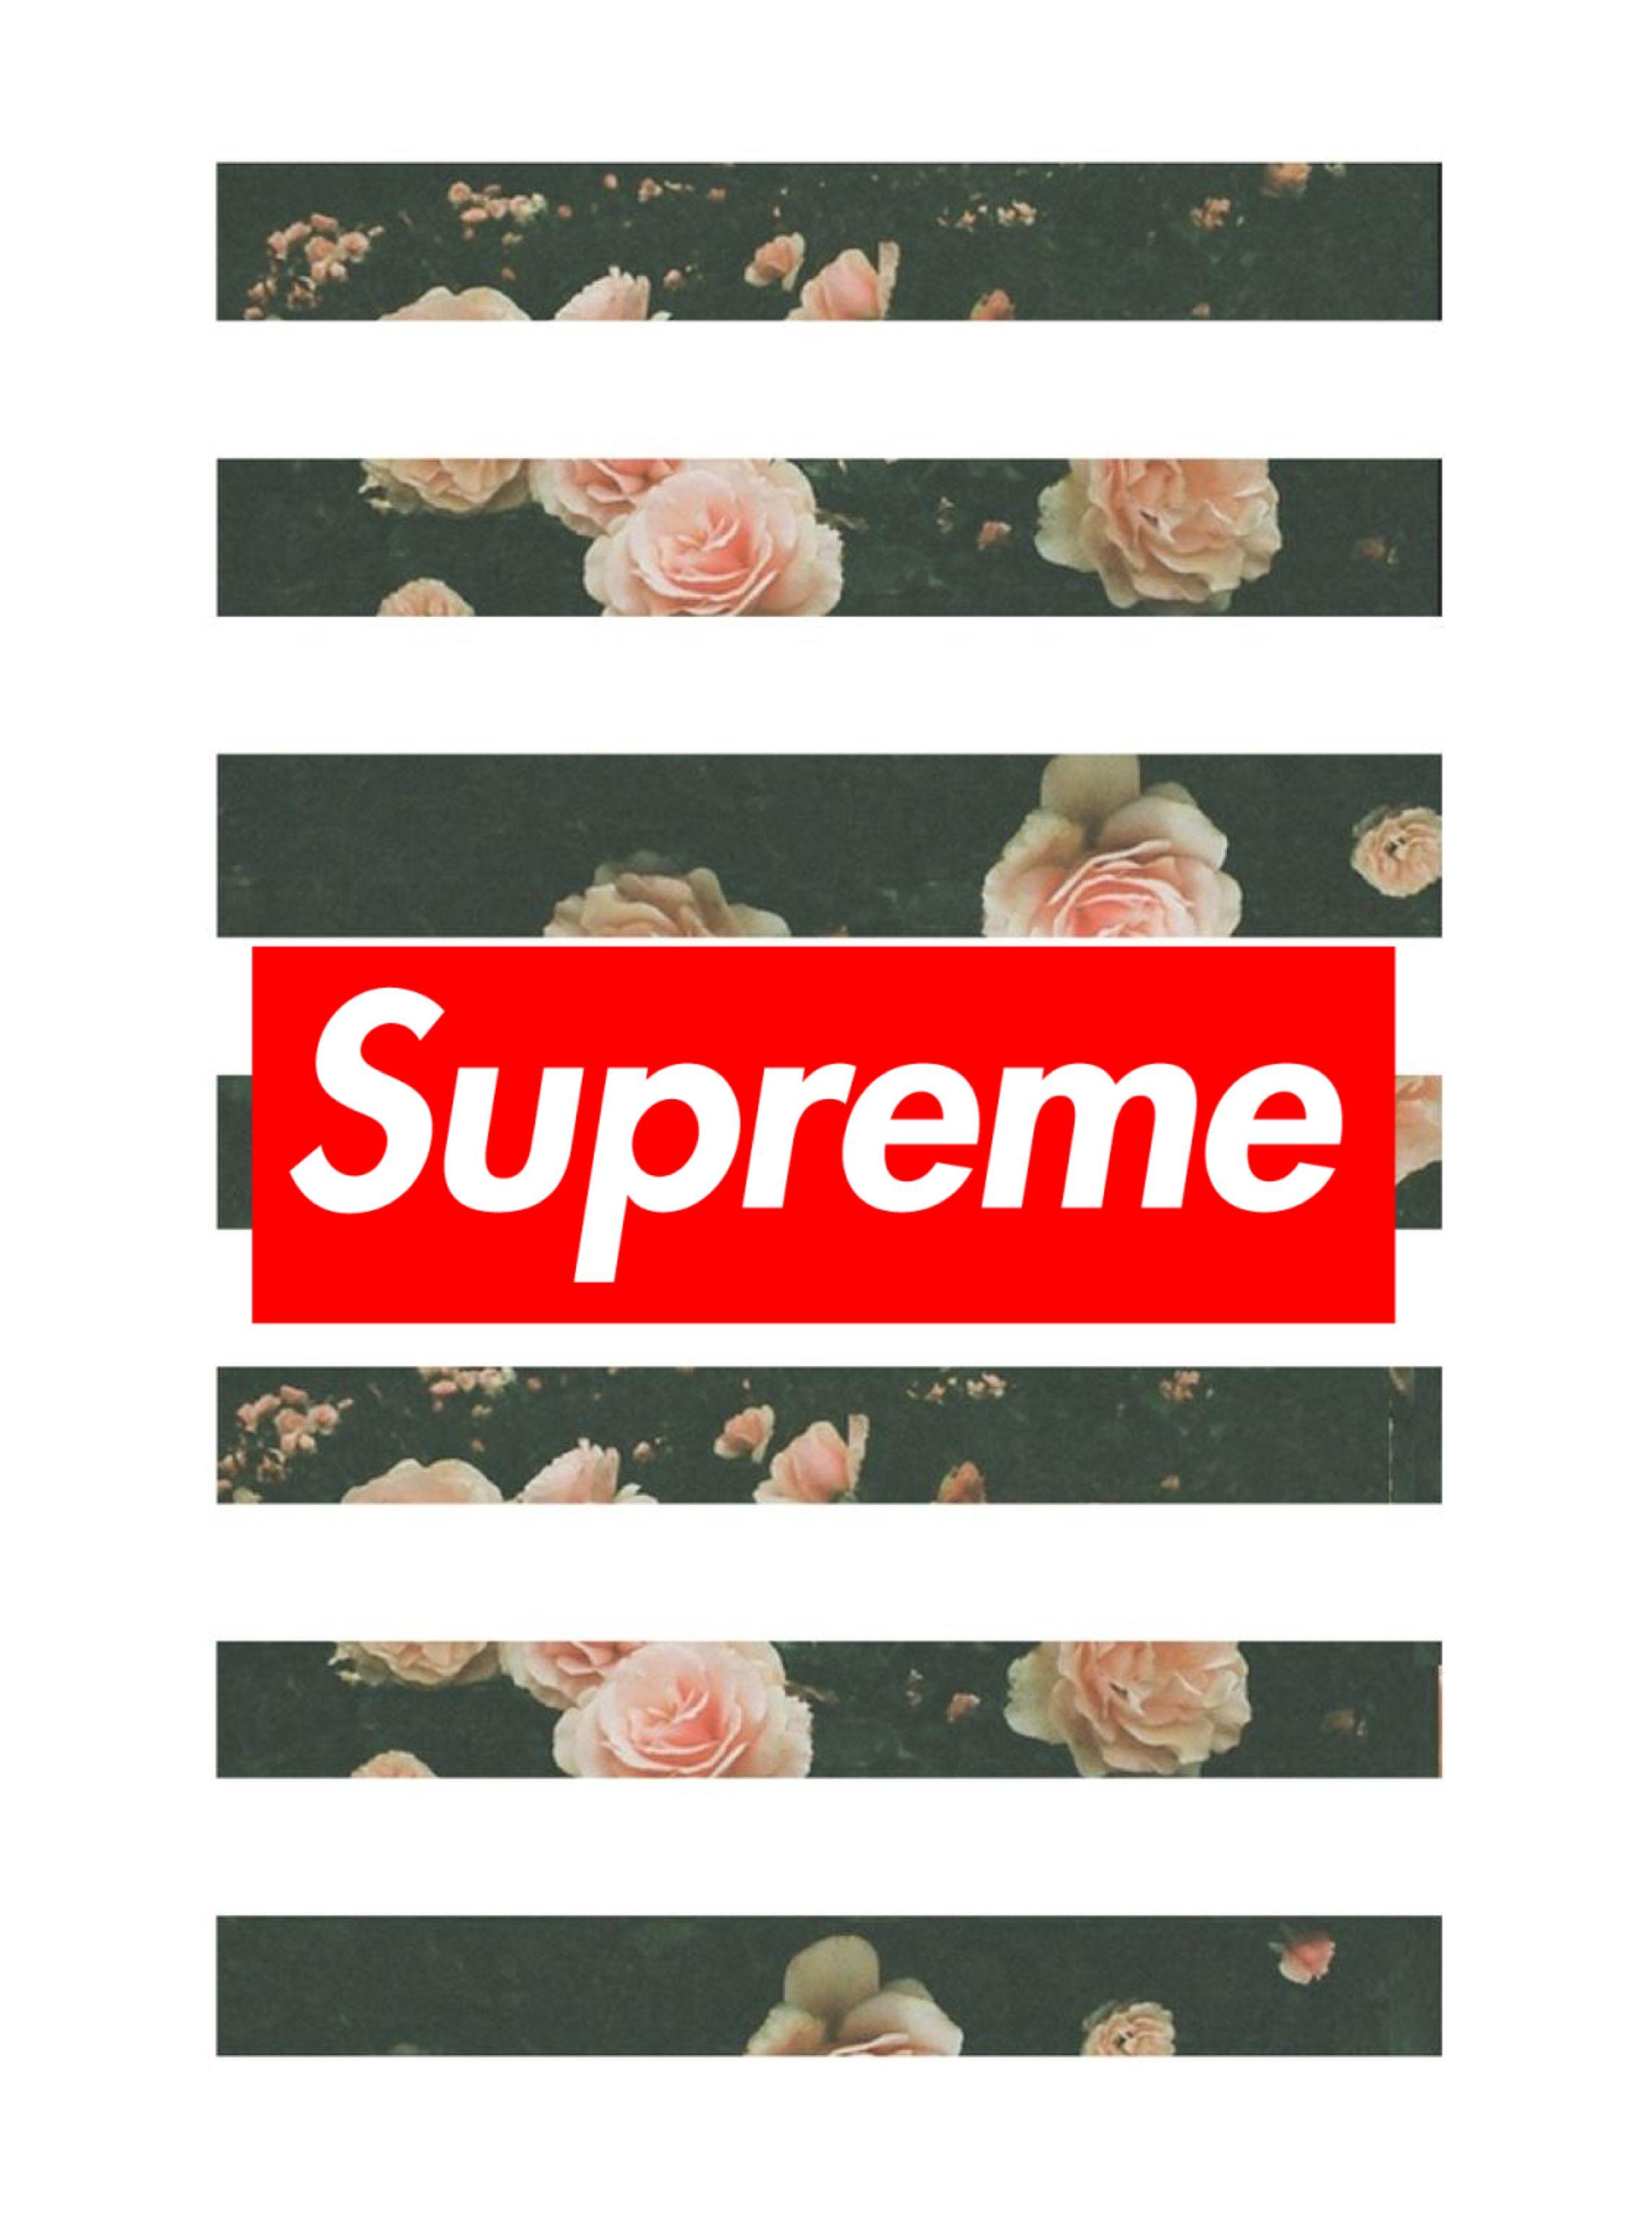 Supreme wallpaper. Supreme wallpaper, iPhone background, Supreme